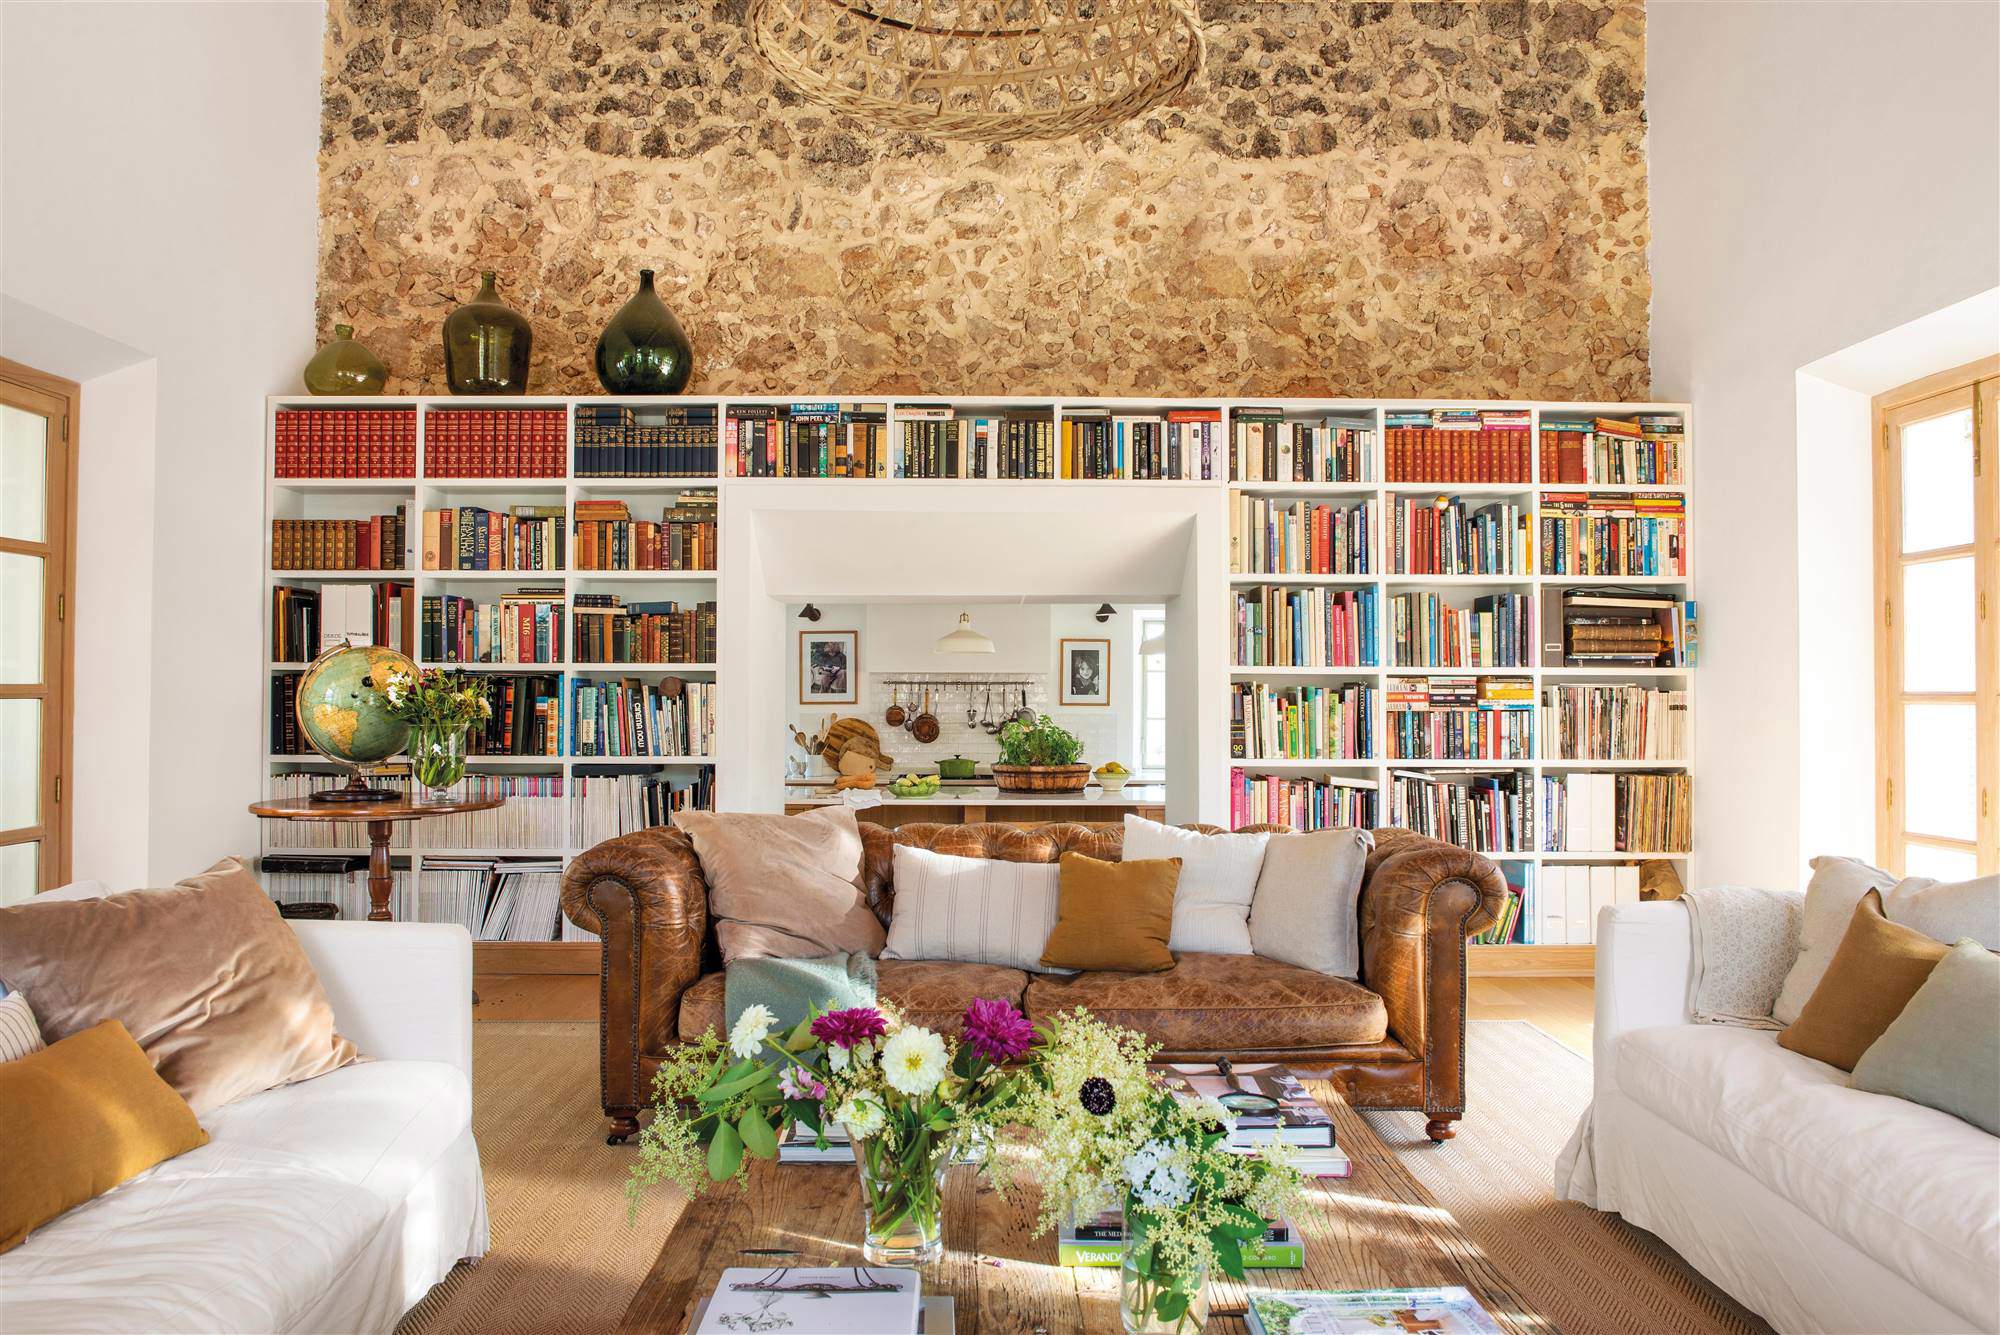 Casa con pared de piedra, librería y sofá chester de cuero. 